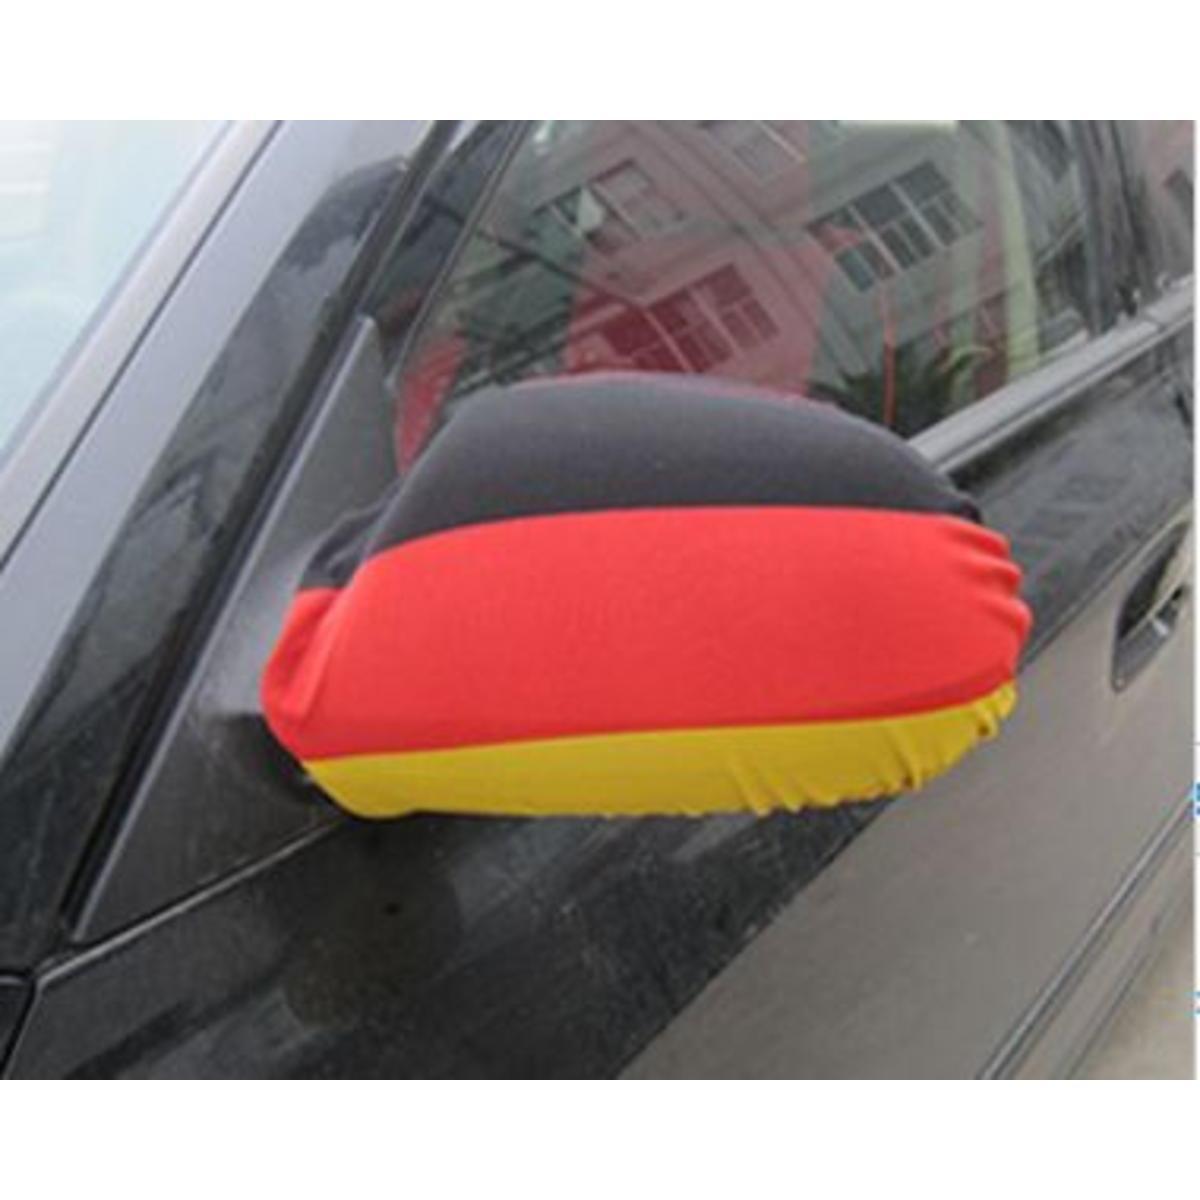 Housse de rétroviseur supporter de l'Allemagne - L 25 x l 24 cm - Noir, rouge, jaune